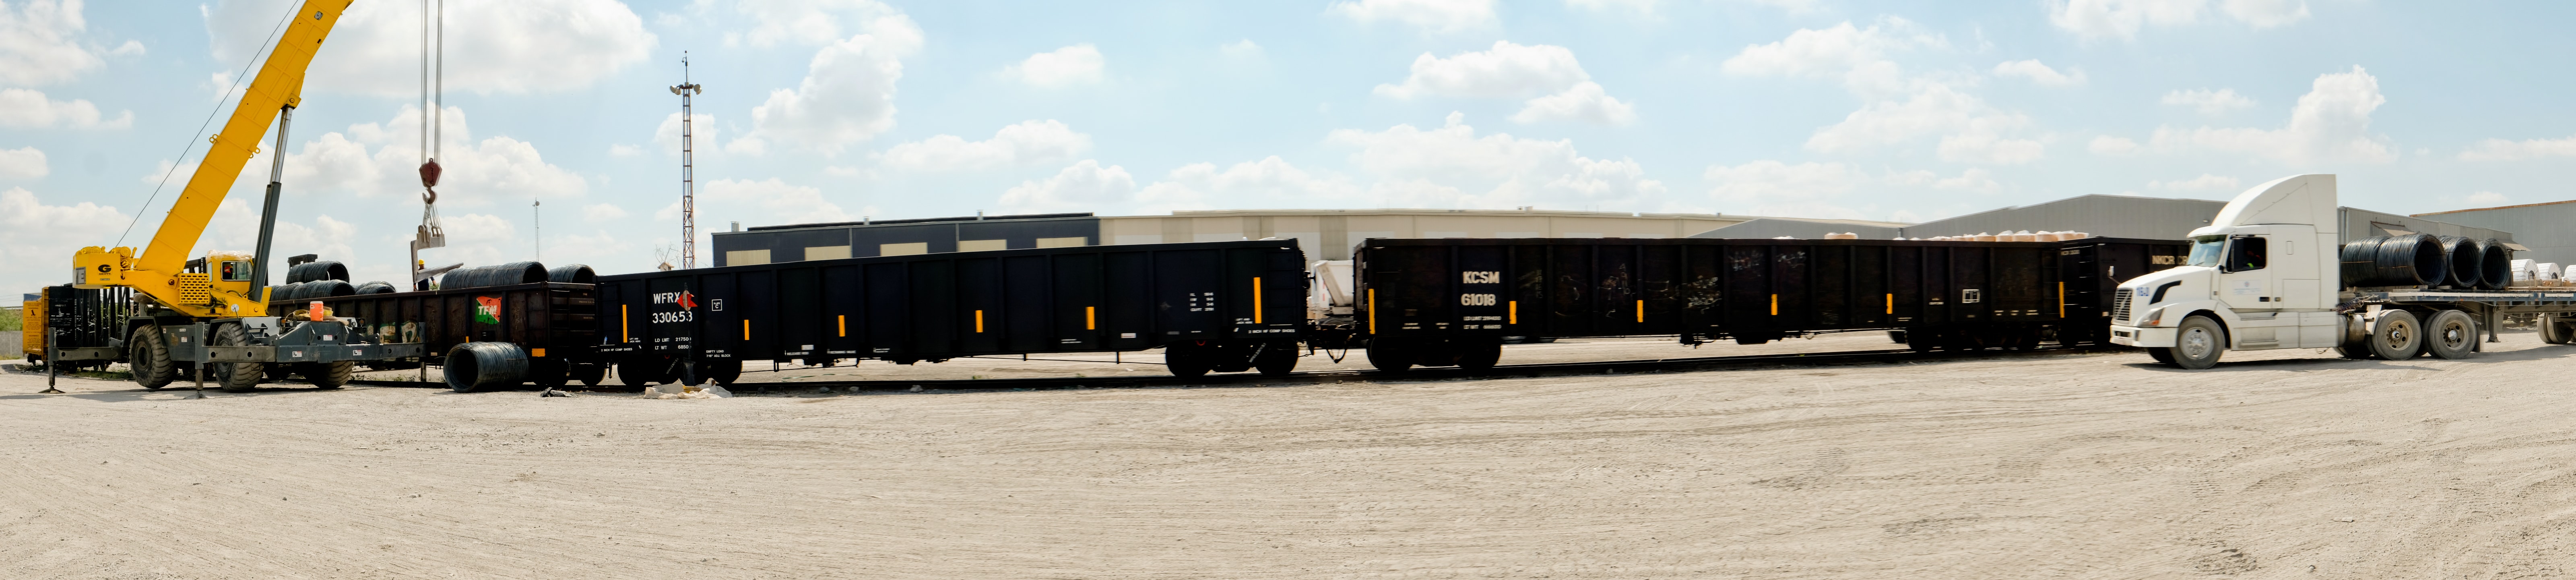 Bodega con material pesado y maquinaria especializada en cargar productos pesados.